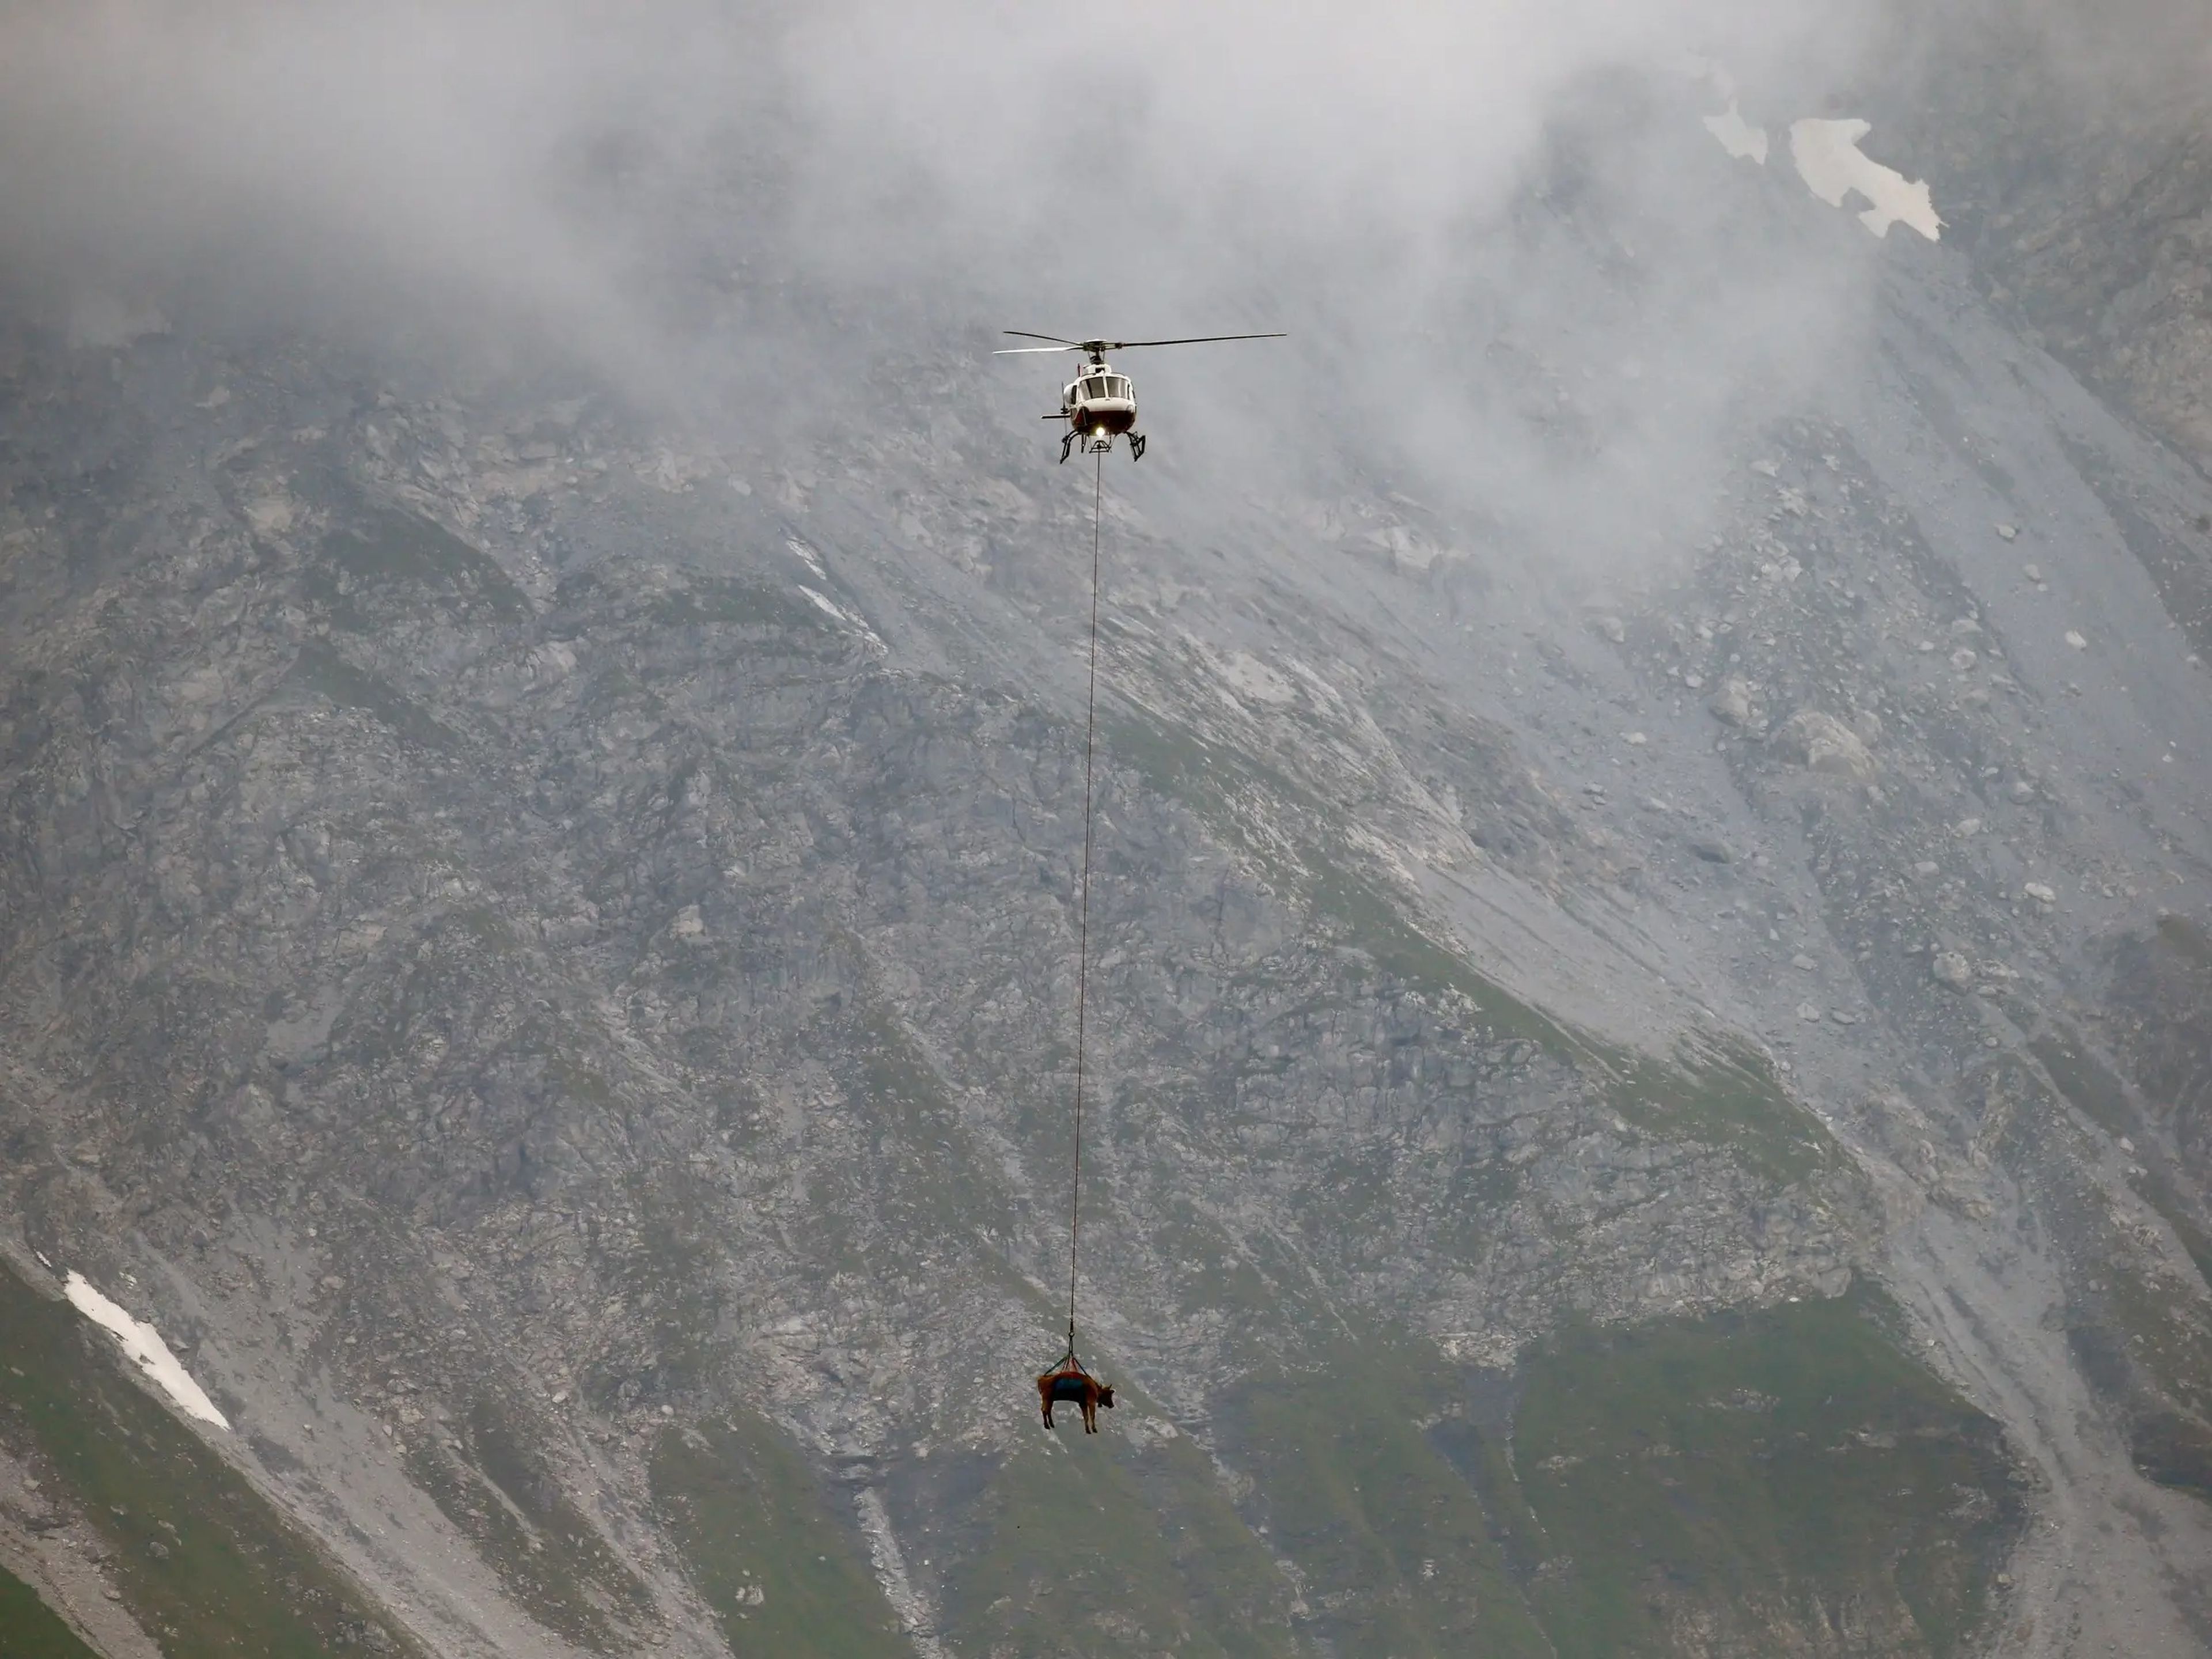 Las vacas heridas durante su estancia en verano en las altas praderas alpinas suizas fueron recogidas en helicóptero el 27 de agosto para poder tratarlas.